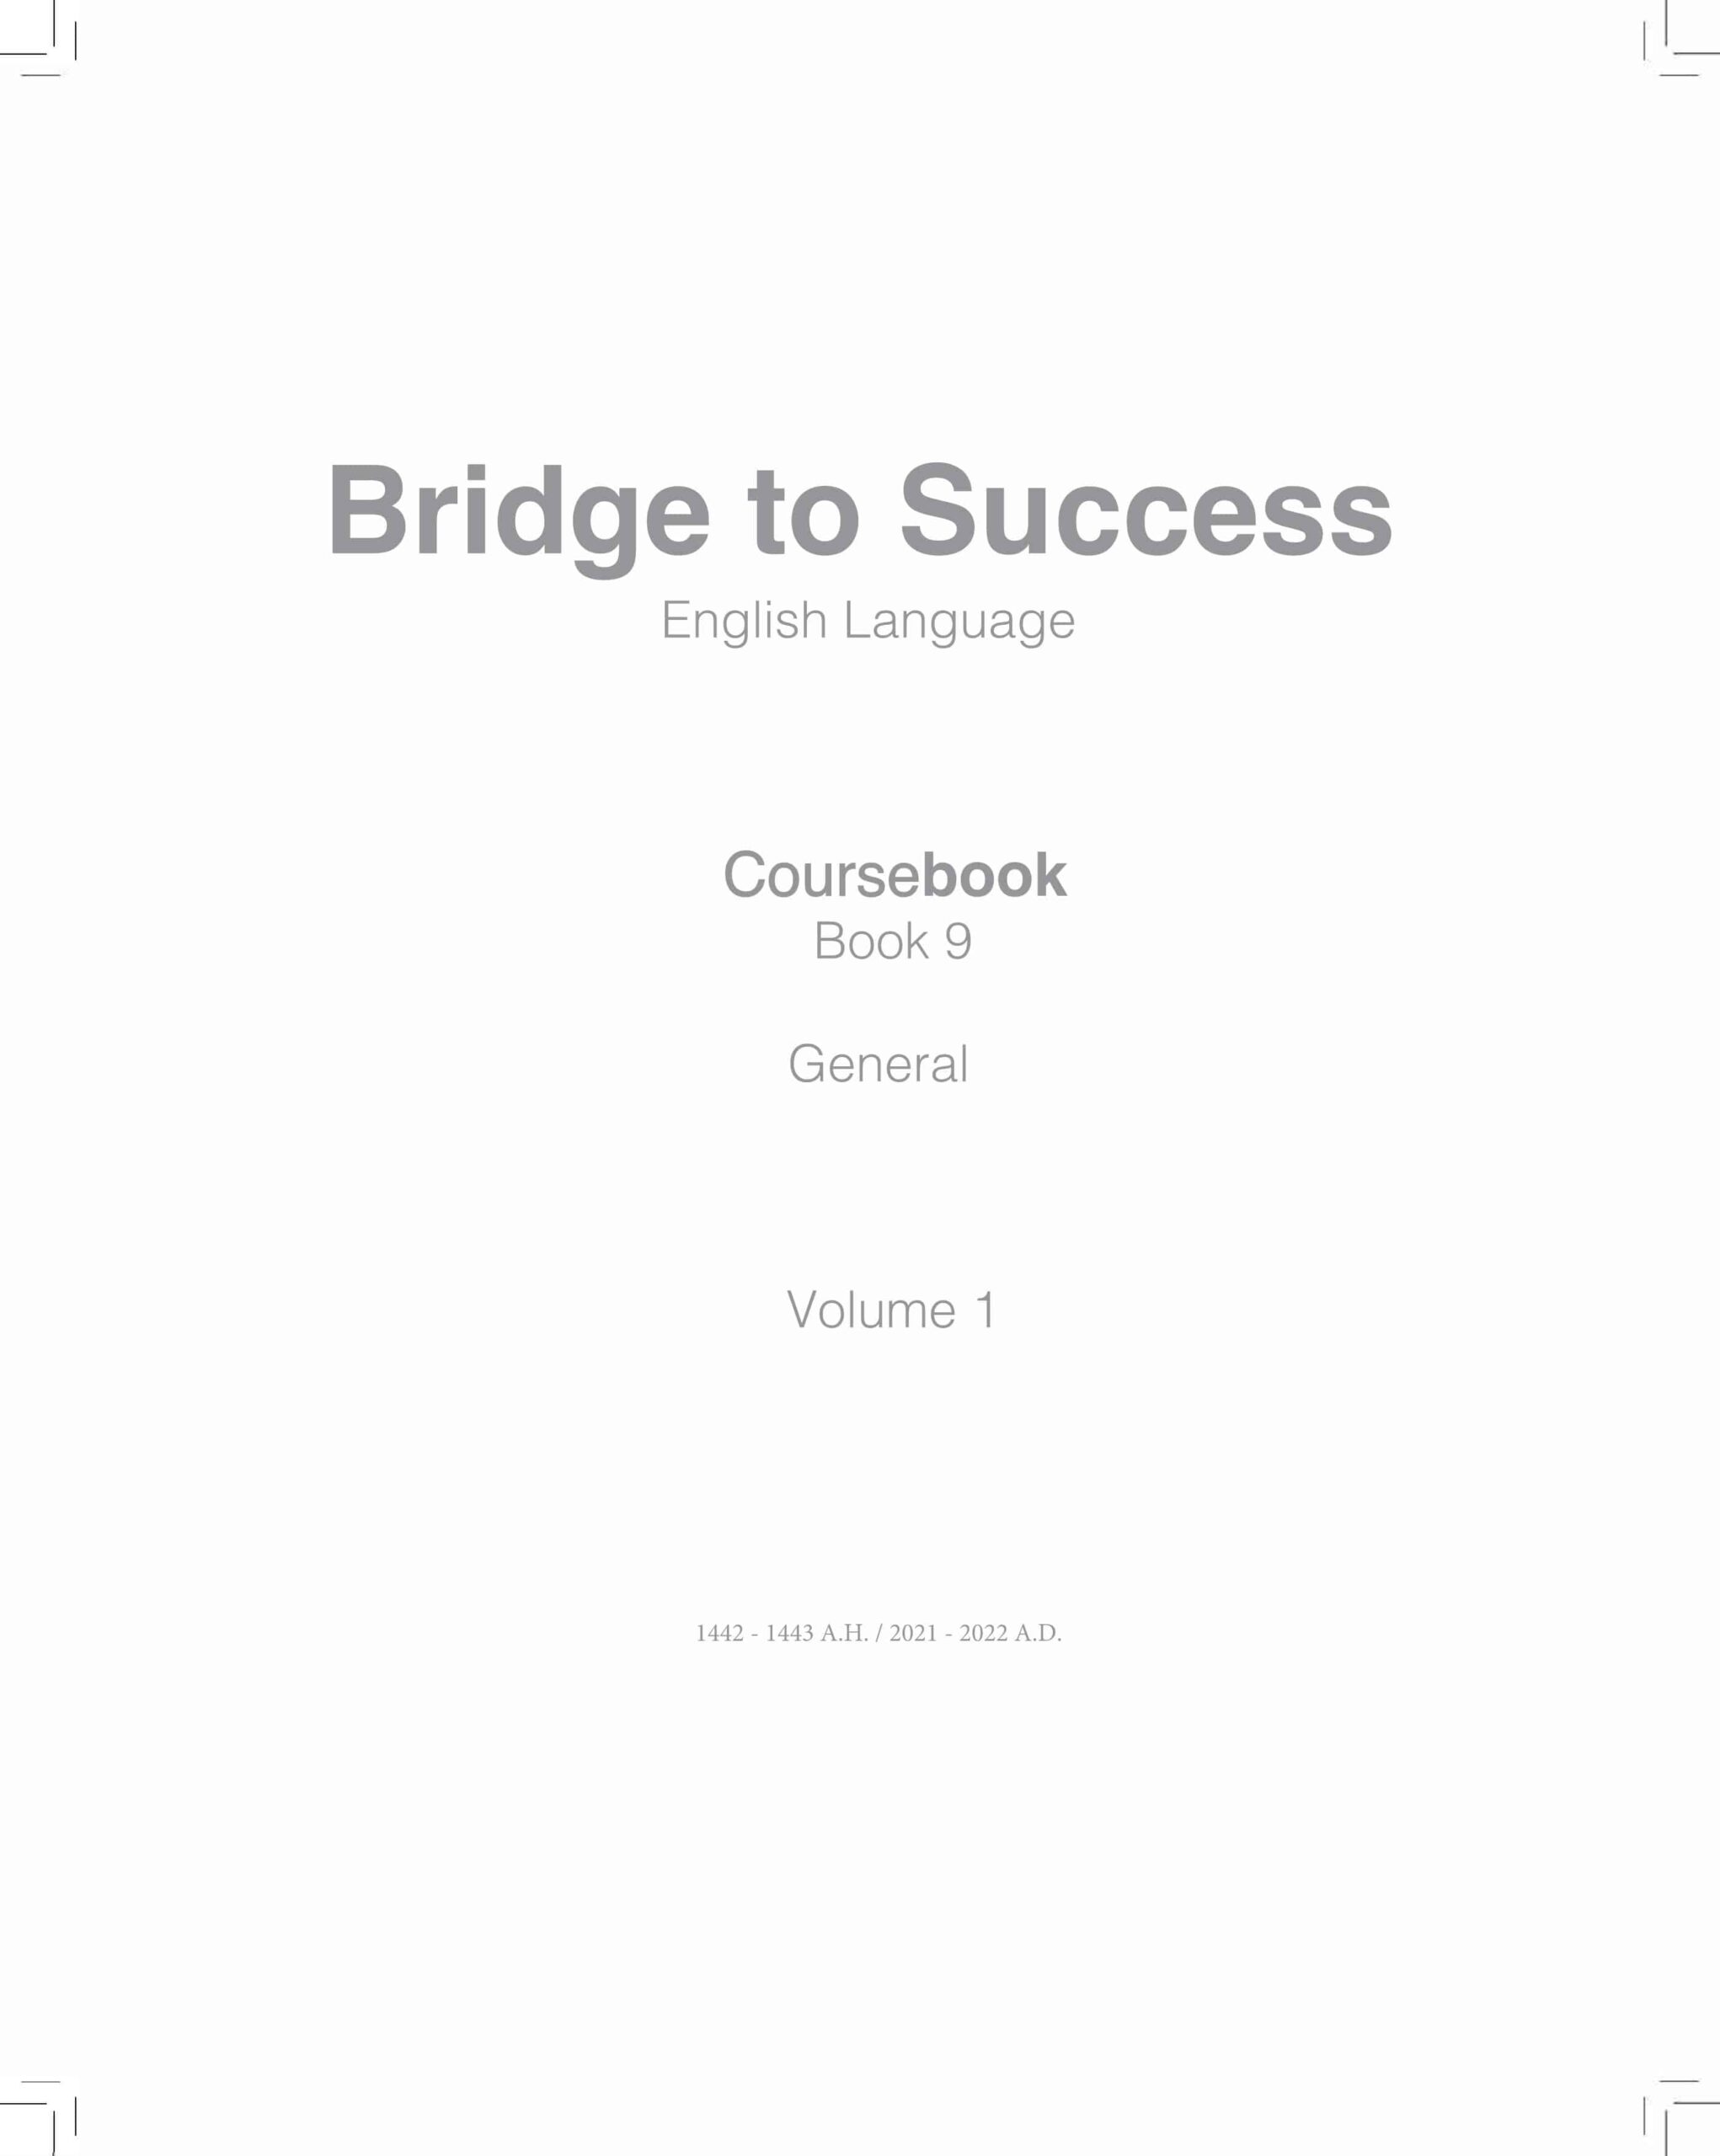 كتاب الطالب Course book اللغة الإنجليزية الصف التاسع الفصل الدراسي الأول 2021-2022